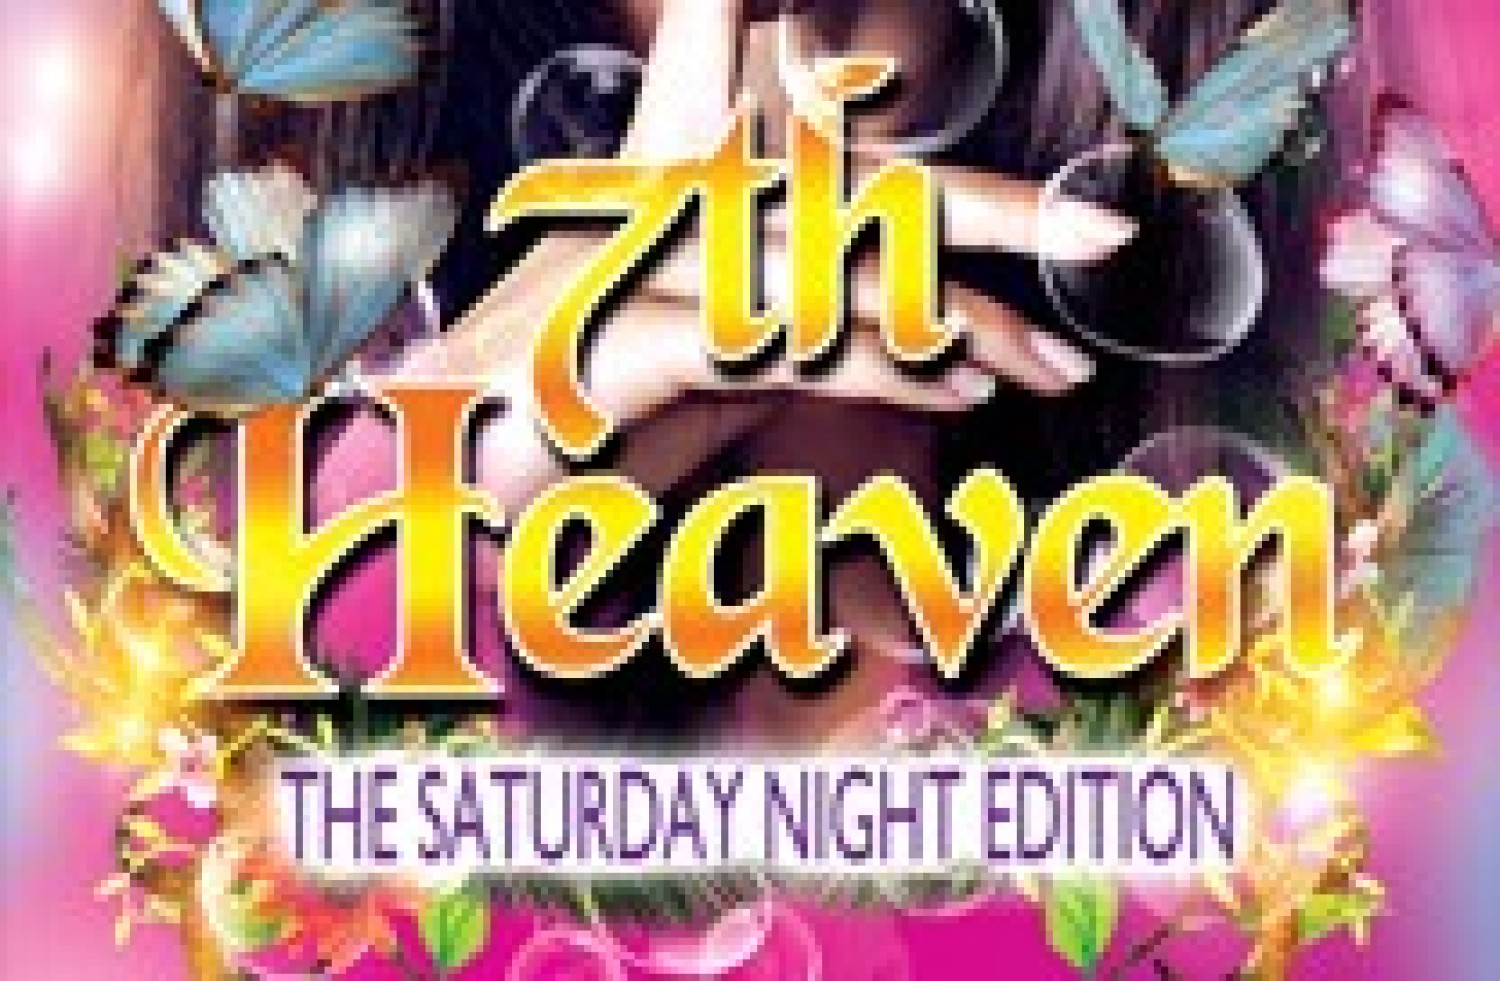 Party nieuws: Volgende editie 7th Heaven op zaterdag 24 september!